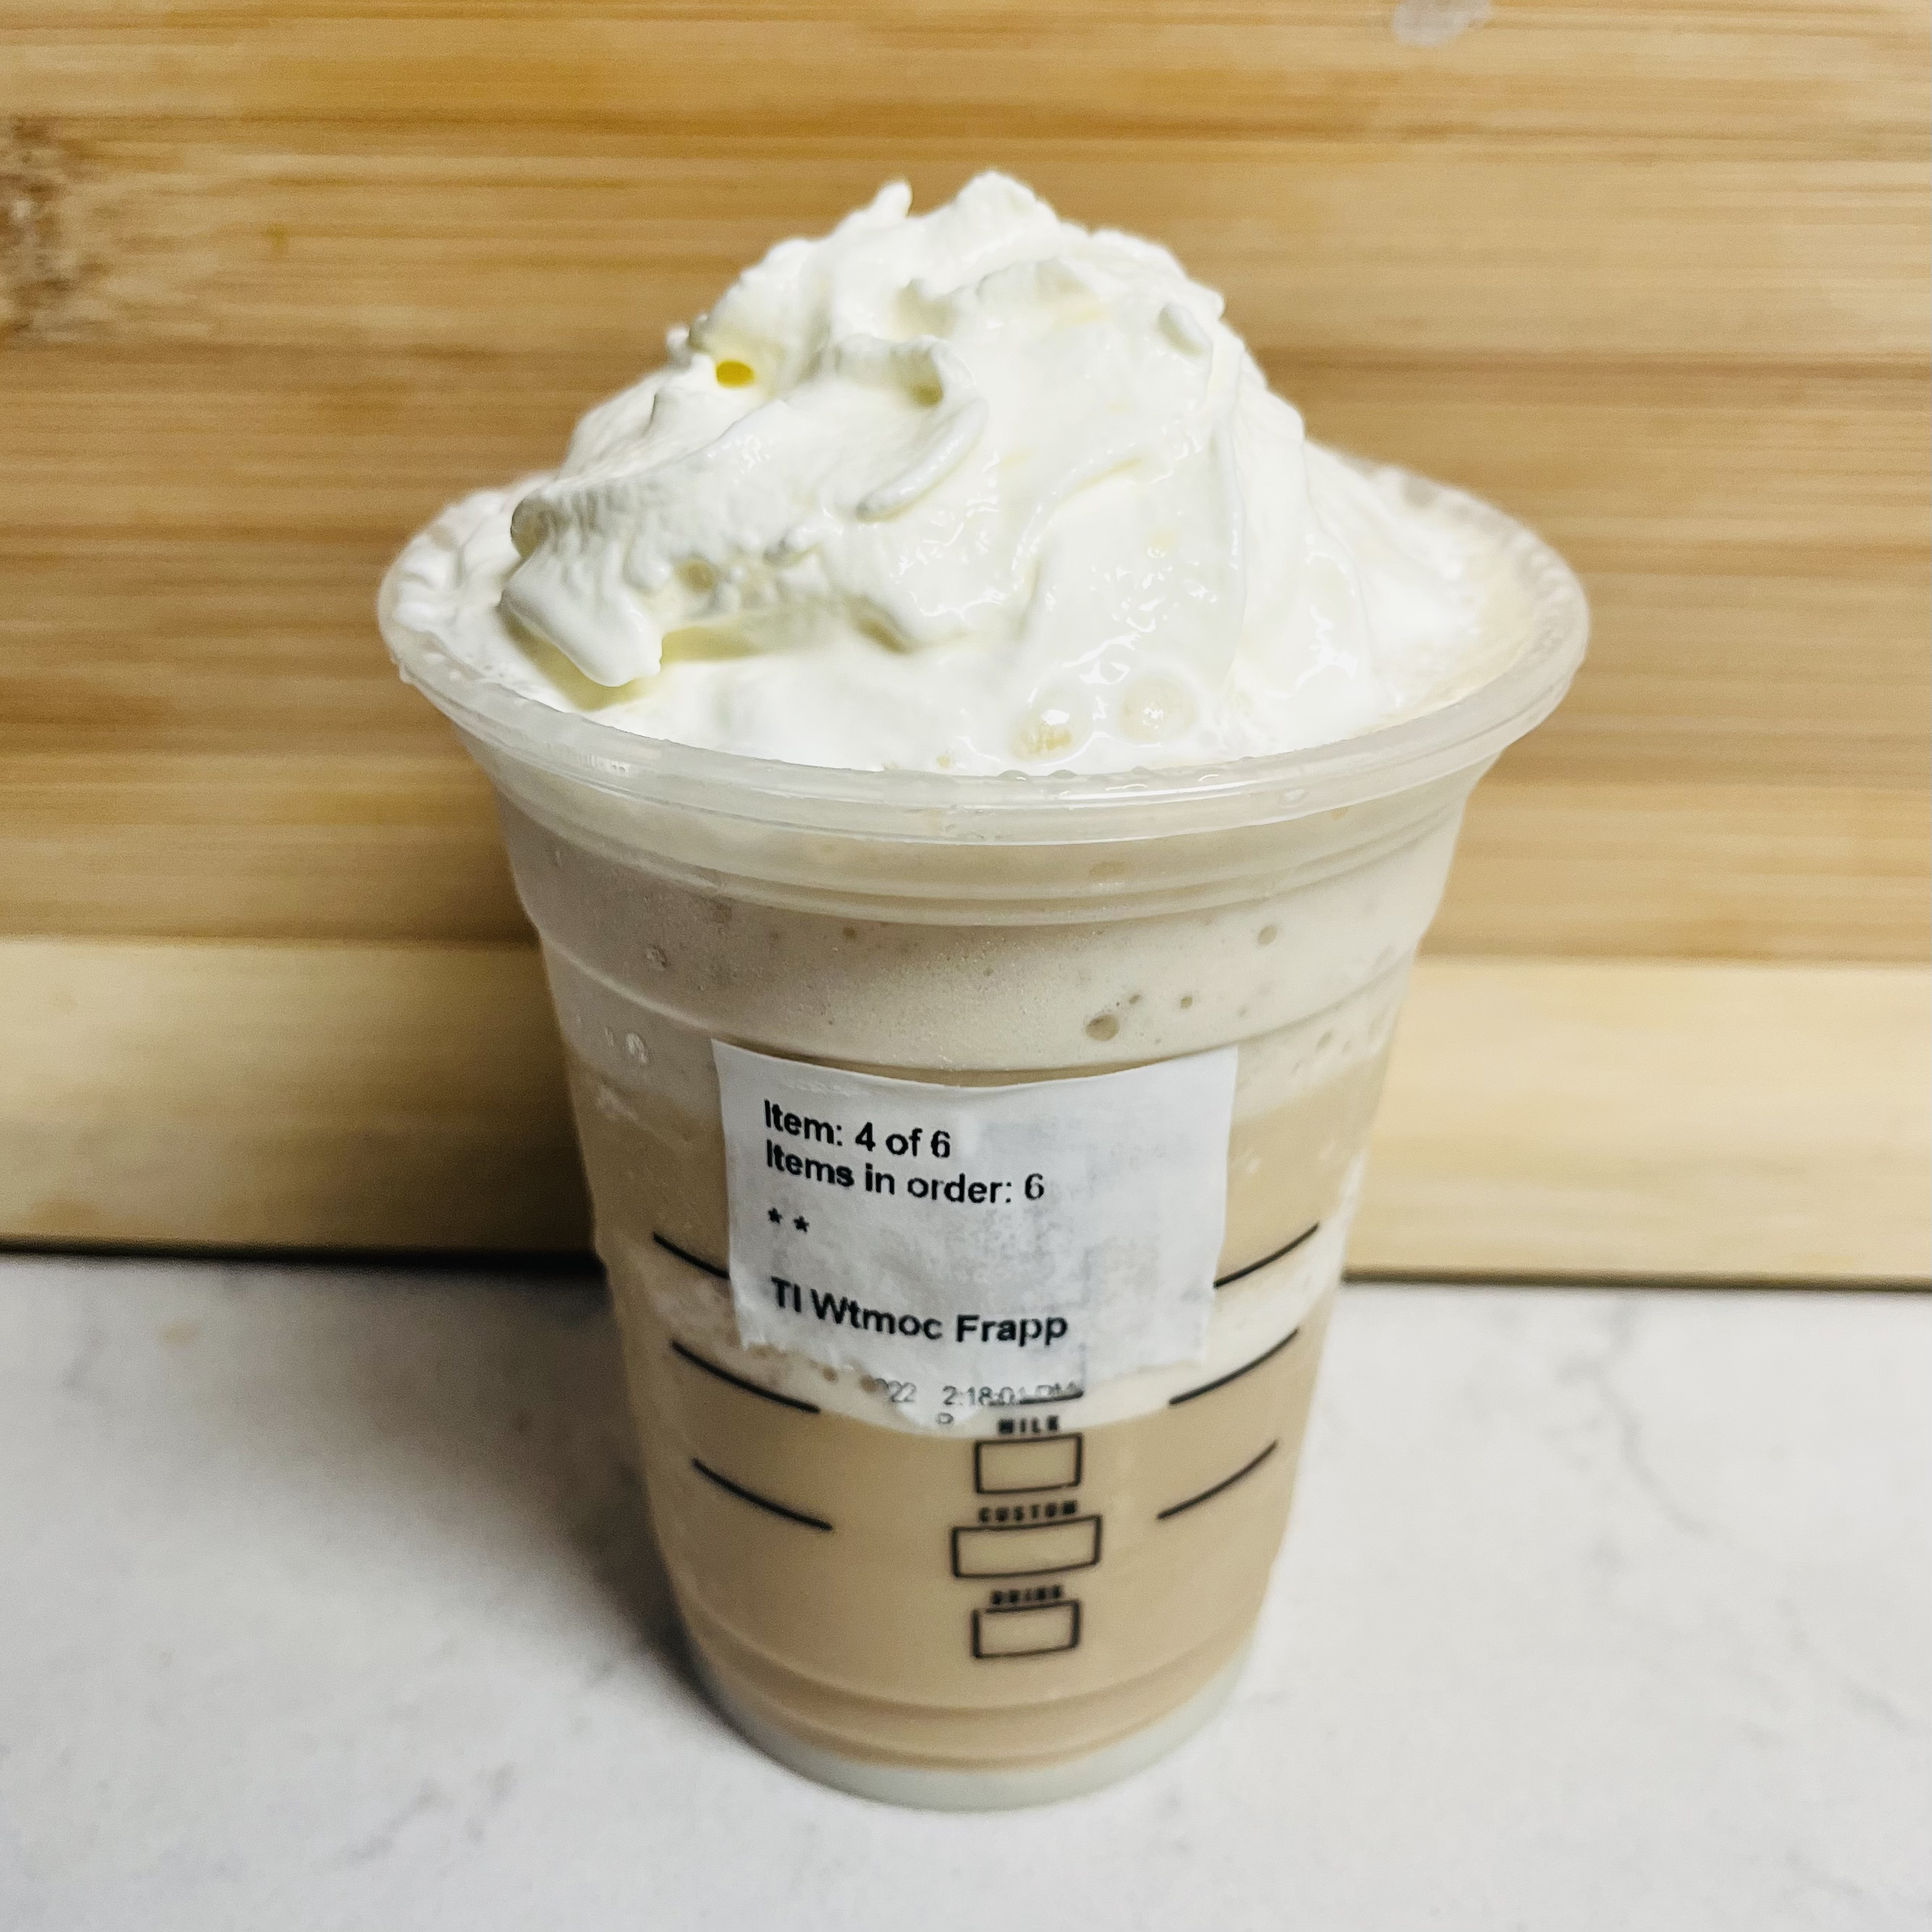 Starbucks Frap Ranking